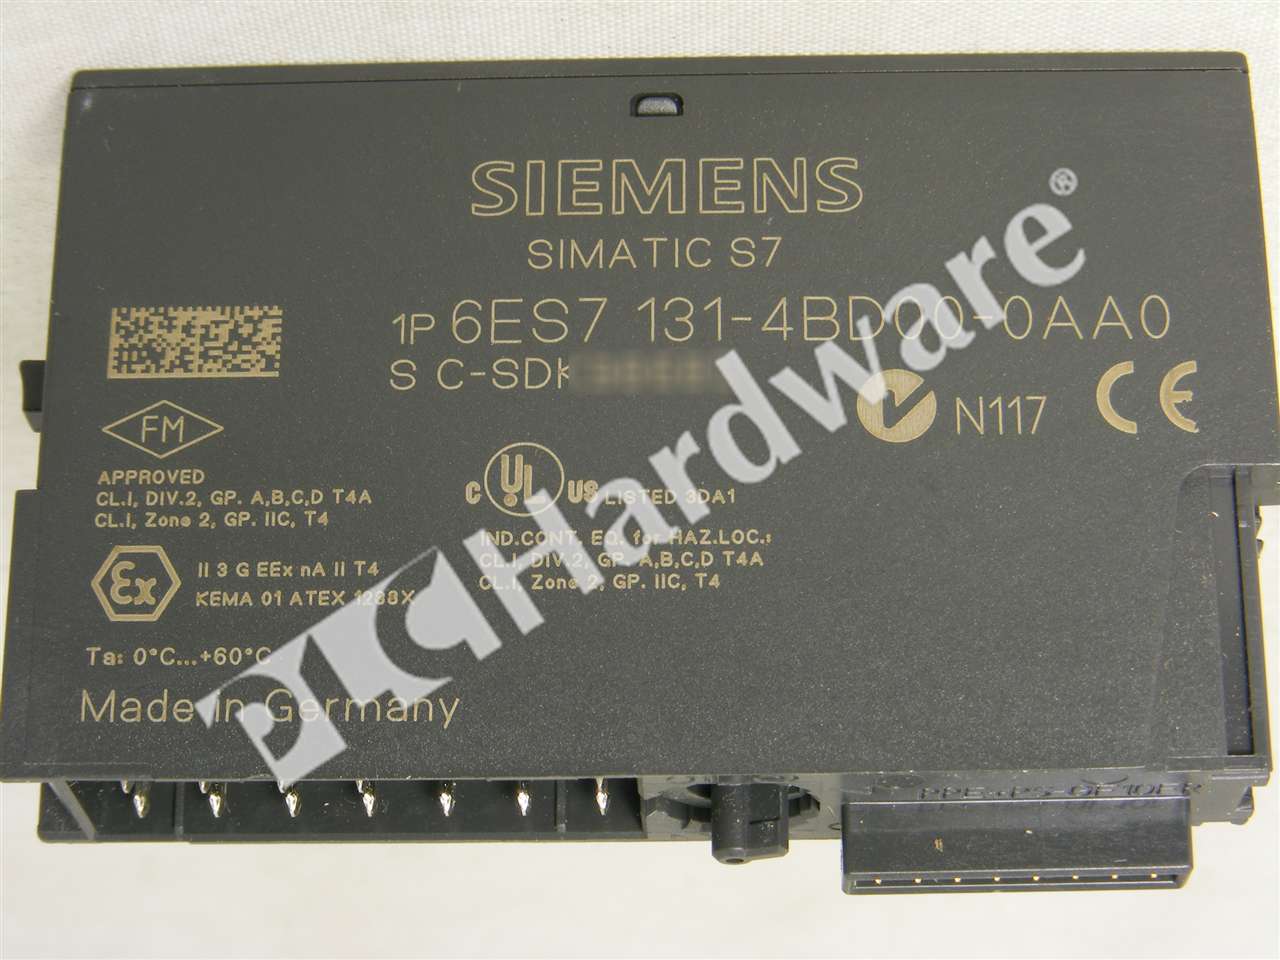 Siemens Simatic s7 6es7 131-4bd00-0aa0 ve 5 trozo 